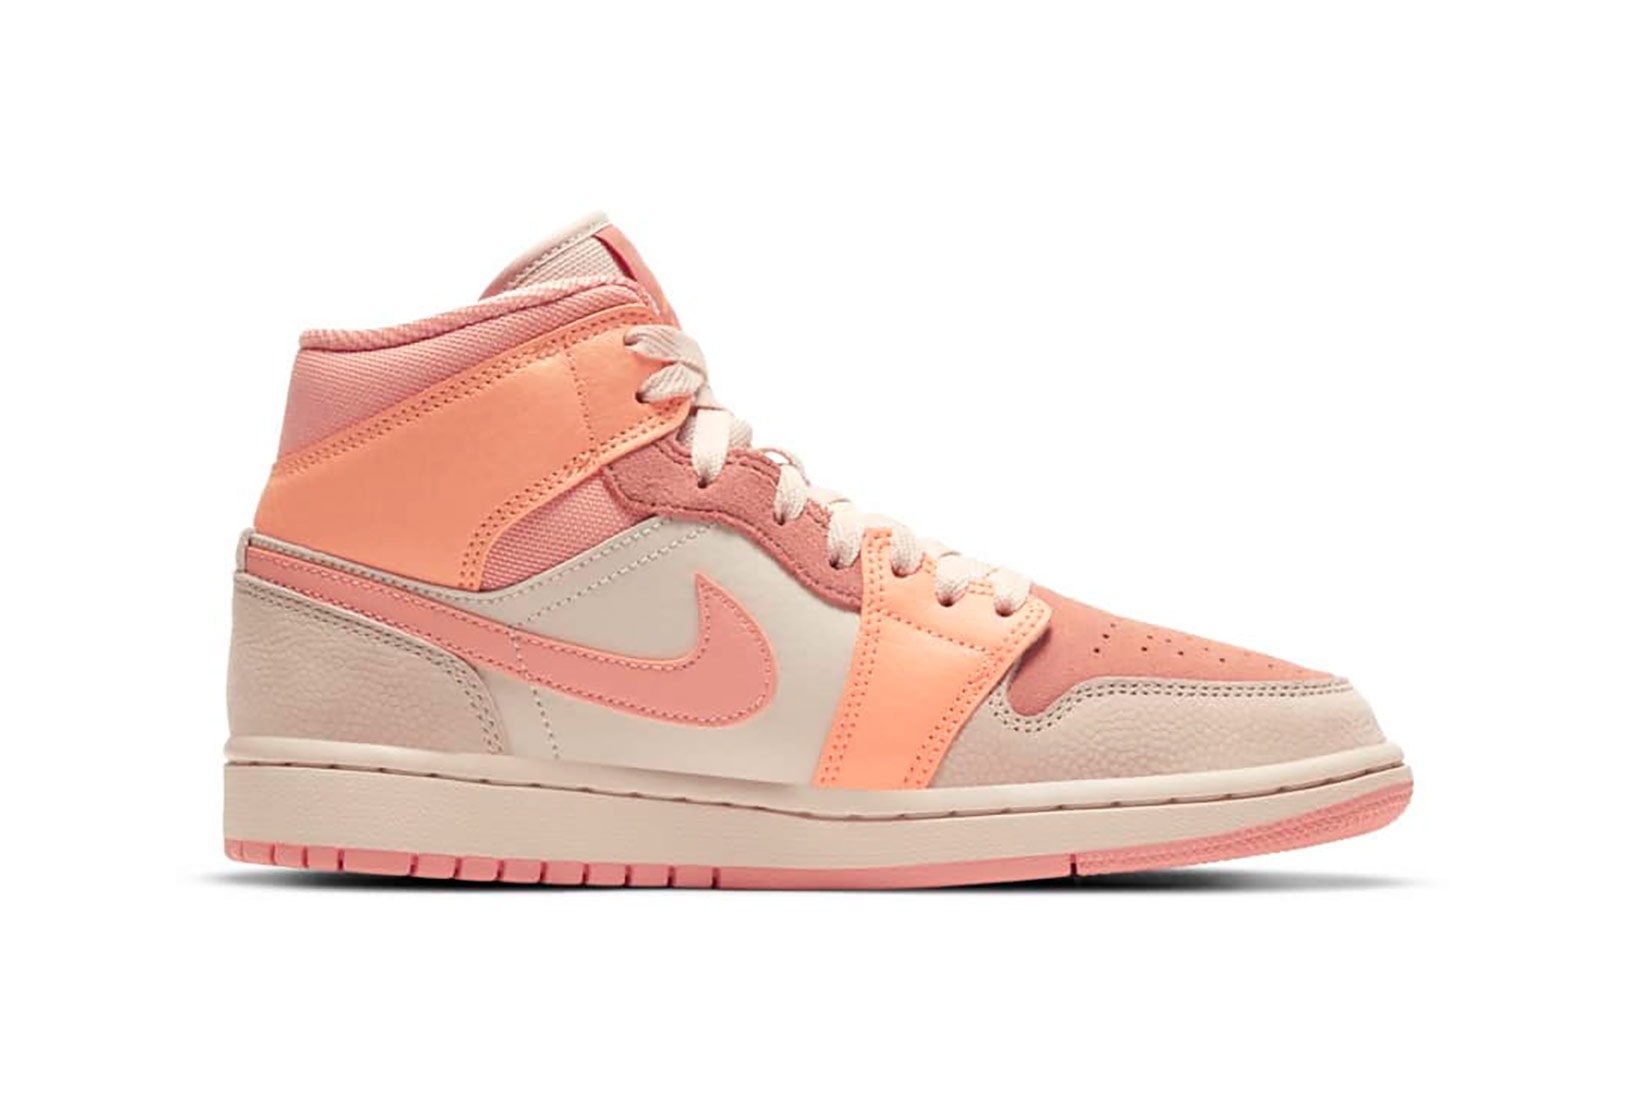 nike air jordan 1 aj1 mid womens sneakers apricot orange pink colorway shoes footwear sneakerhead kicks lateral